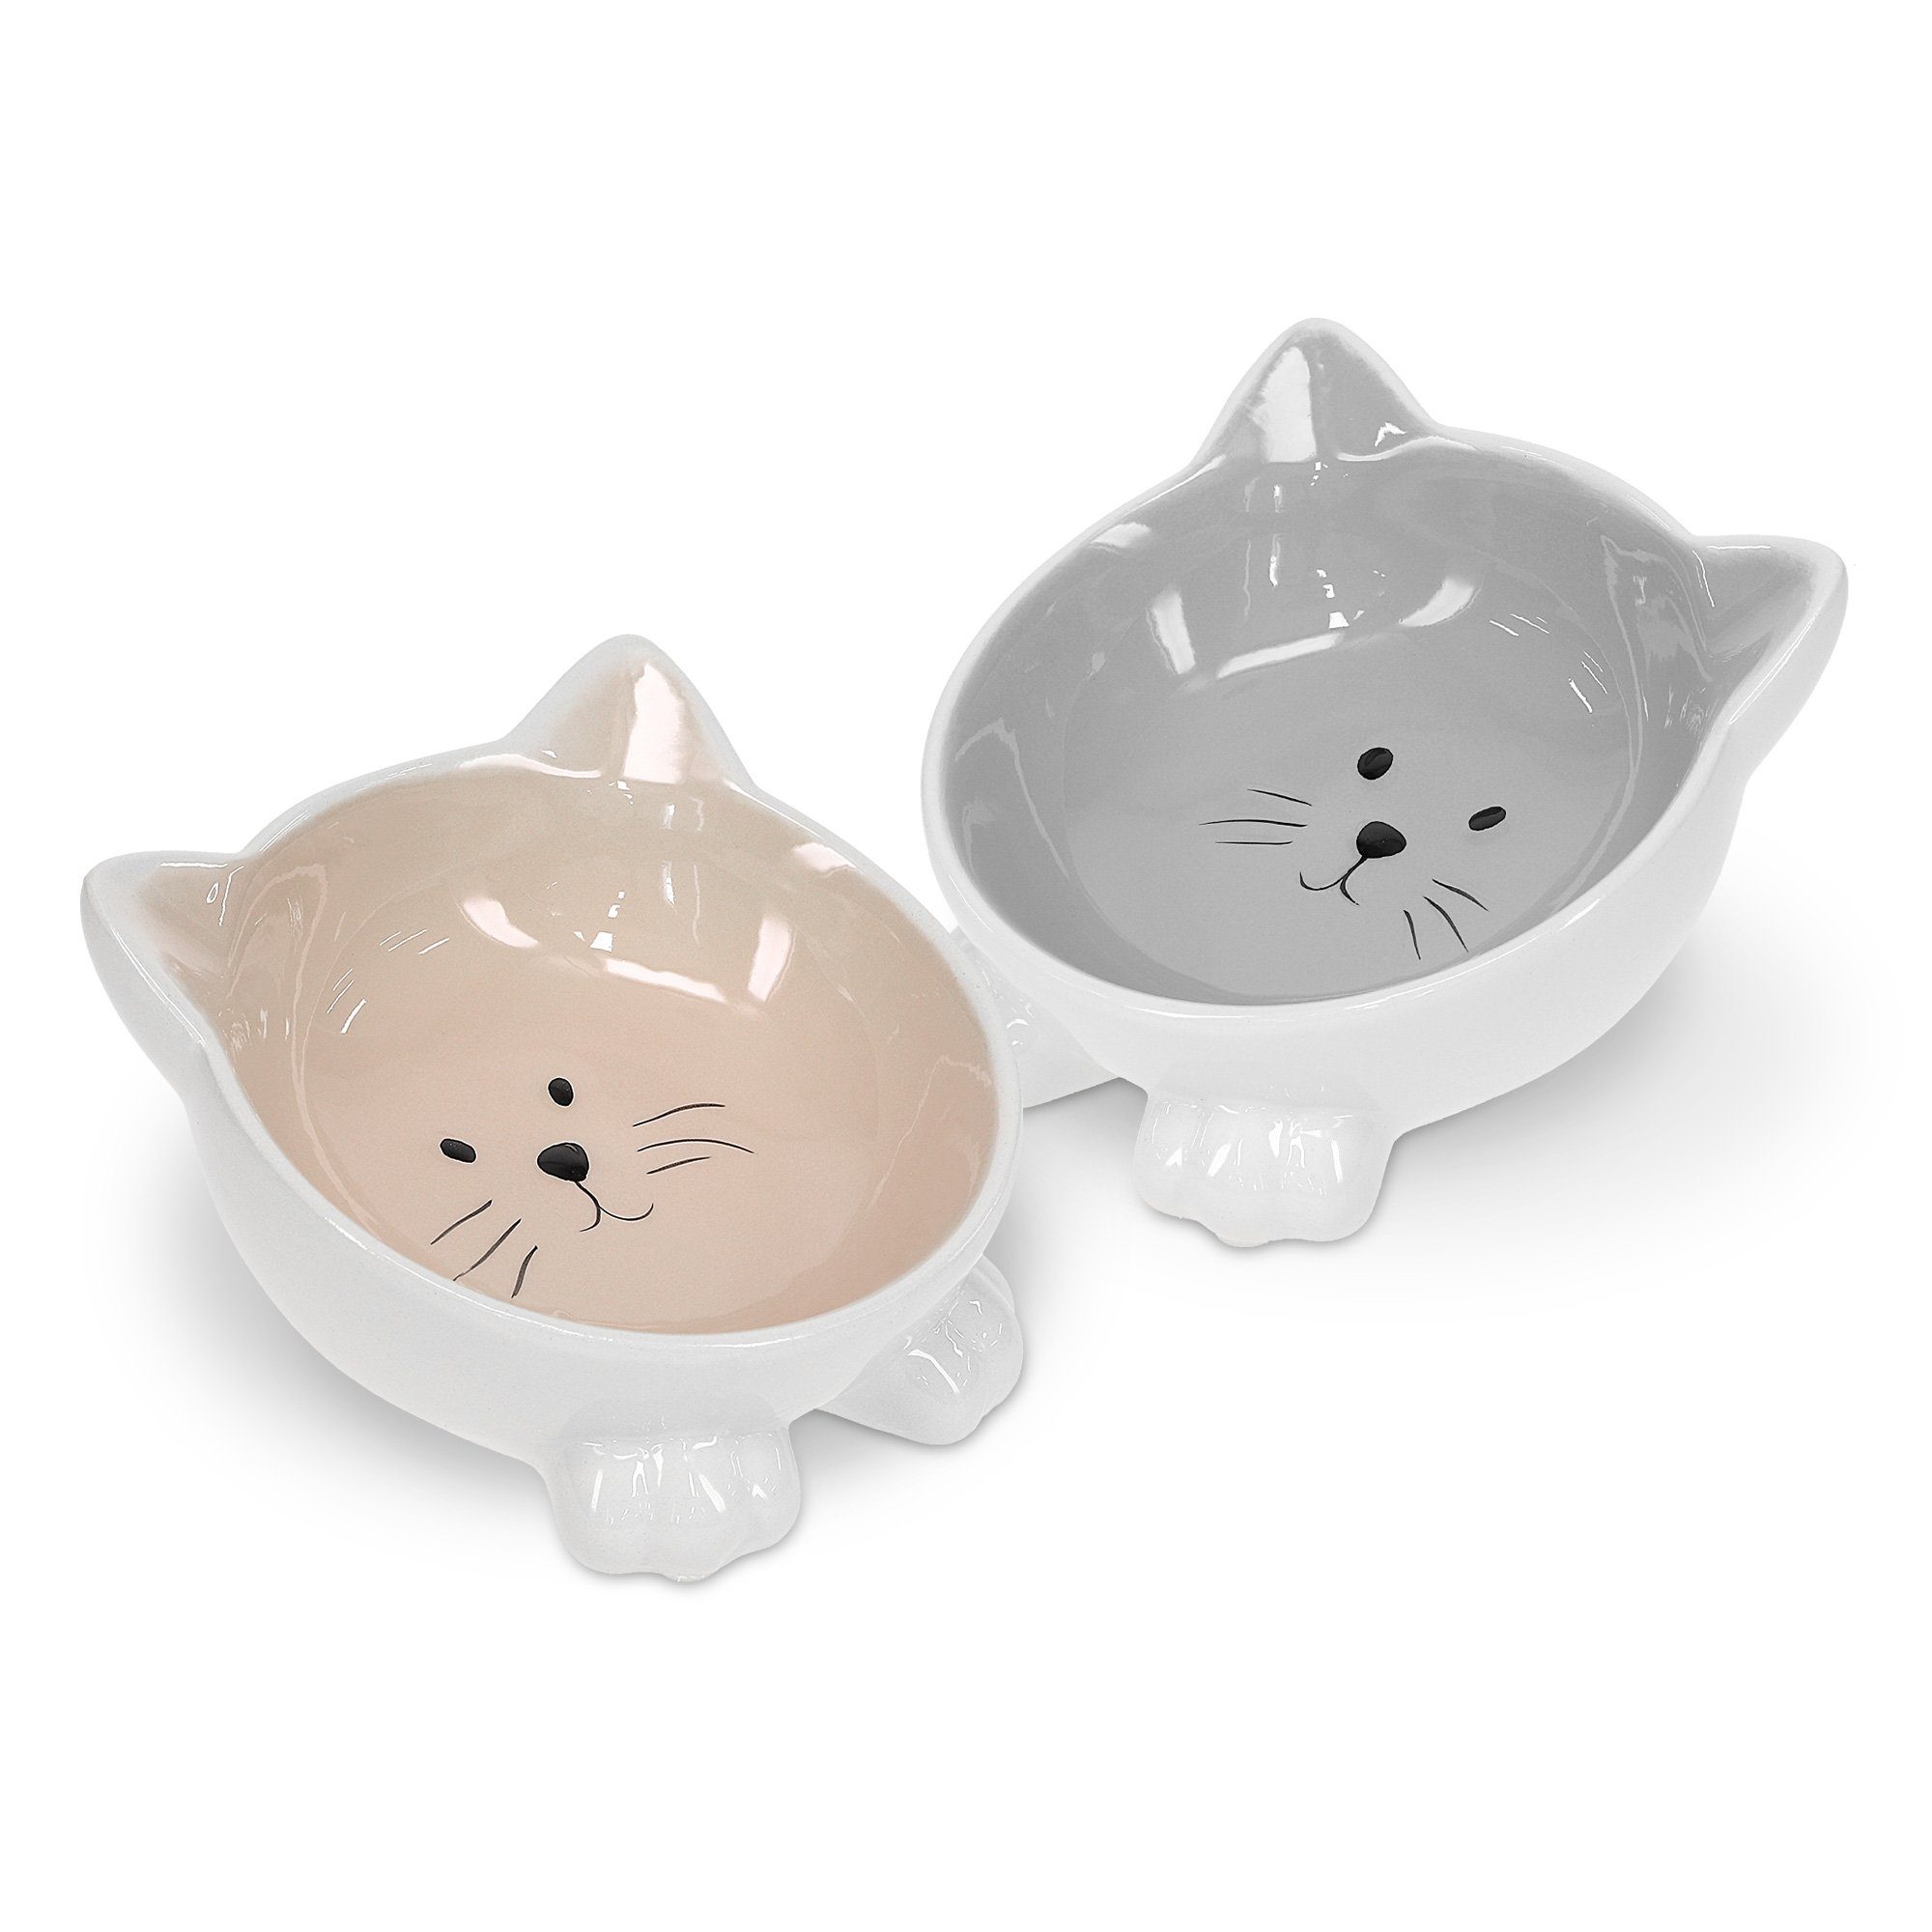 ZweiHandgemachte Katzenapf keramik personalisiert katzenfutter,